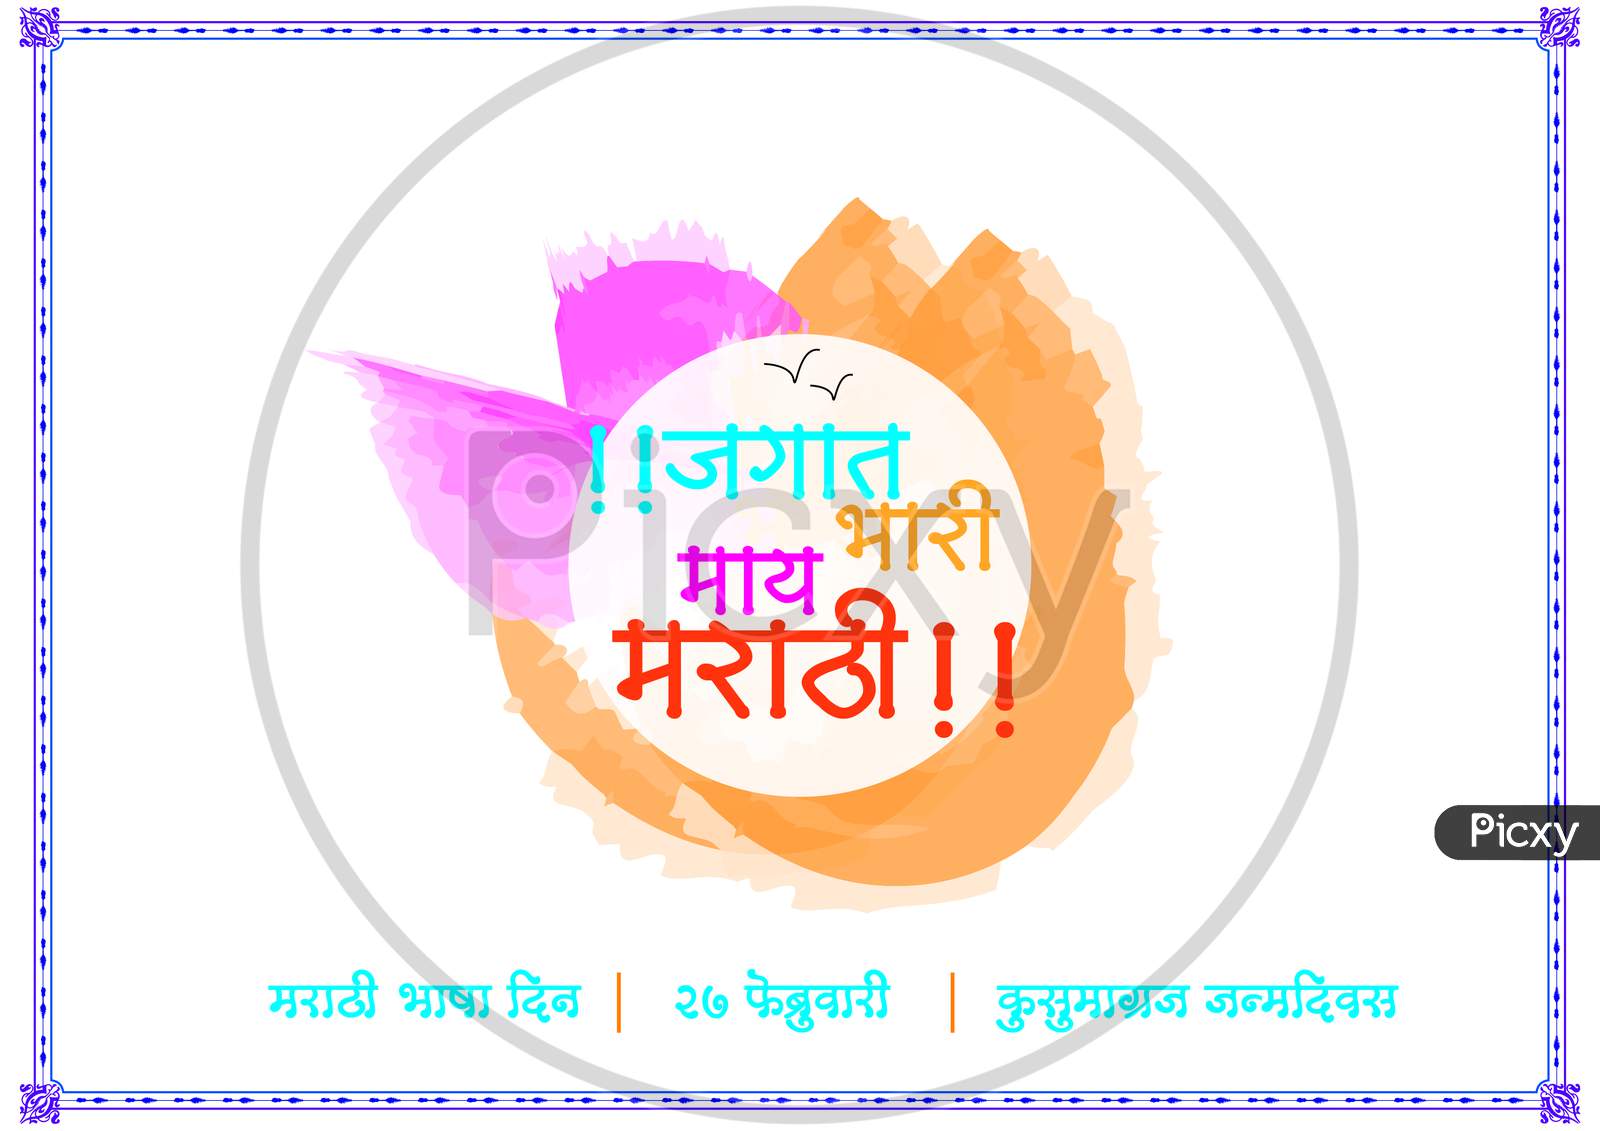 Marathi Language Day, 27 February